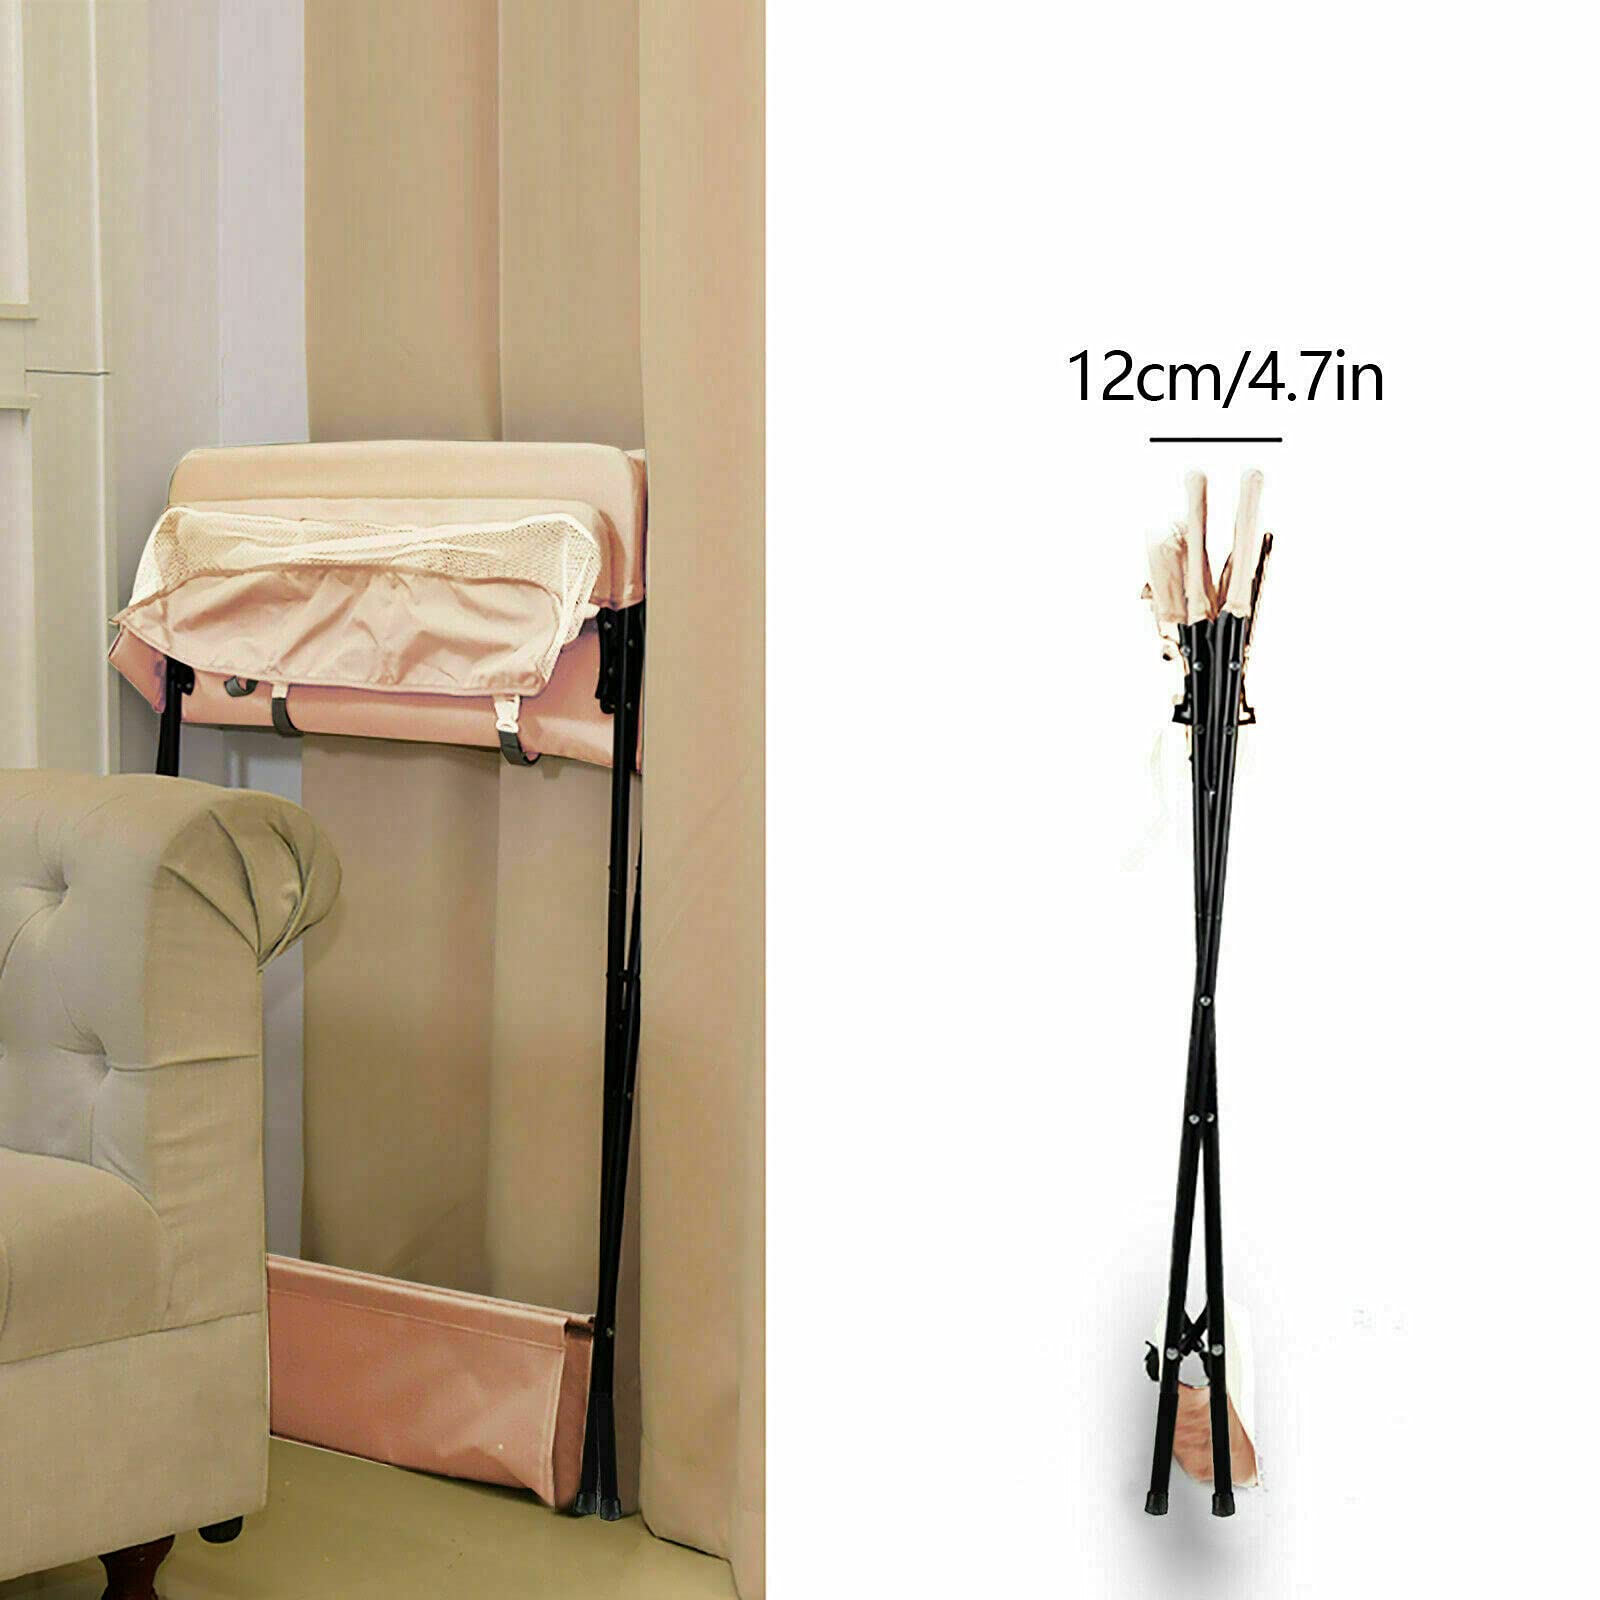 Table à langer pliable pour bébé avec compartiments de rangement, ceinture de sécurité, utilisable comme table à langer (kaki sans roues)